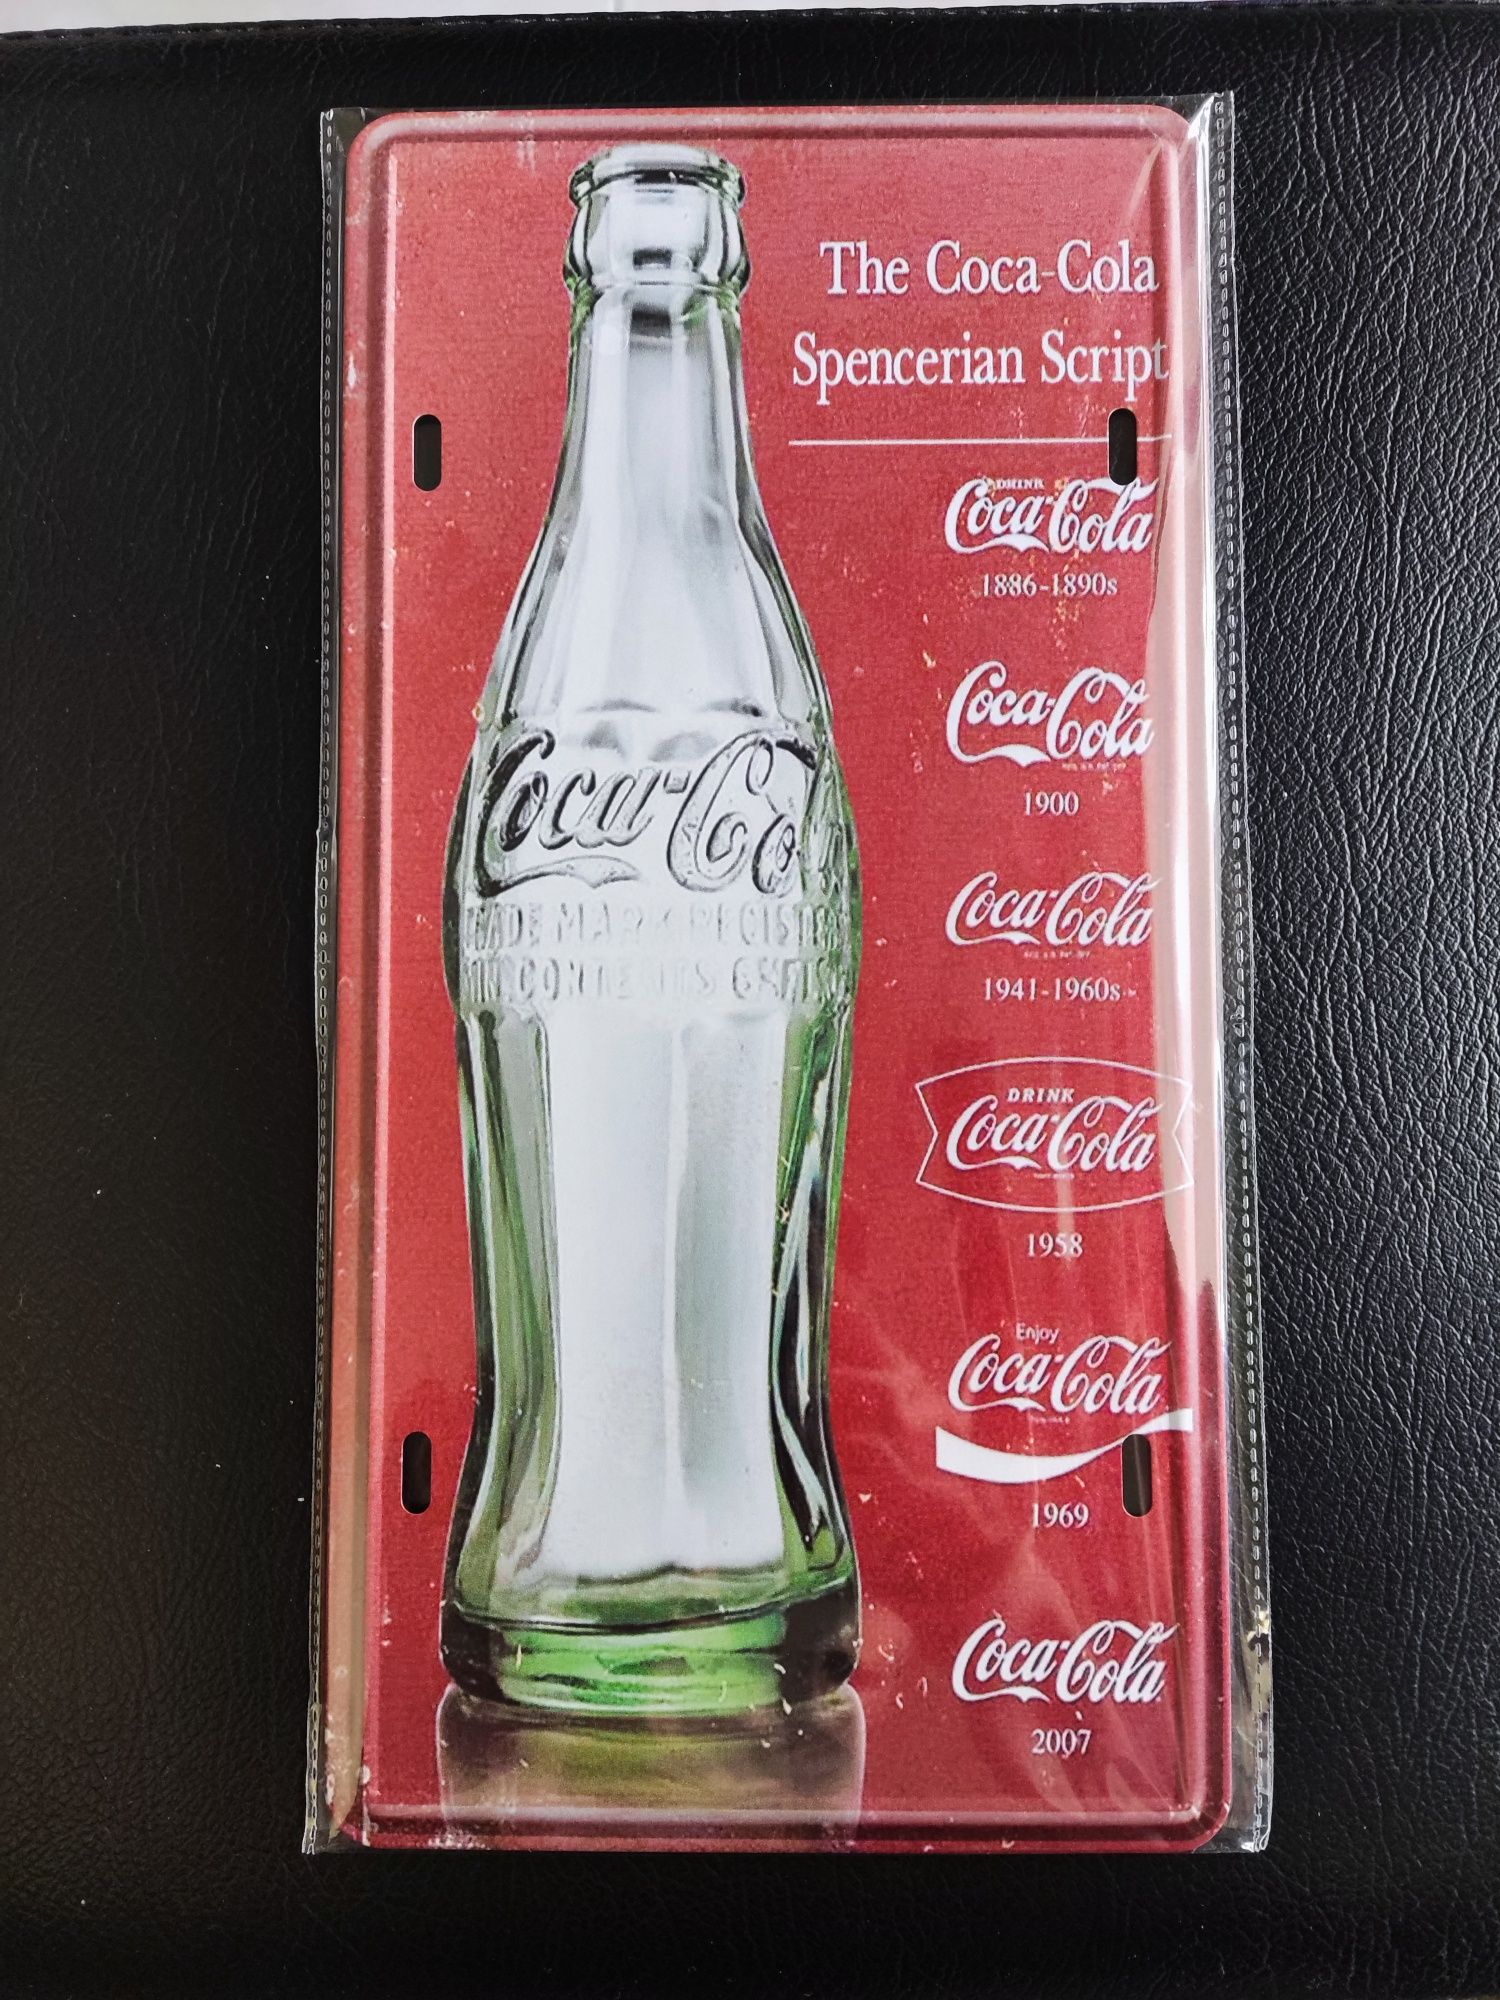 Placa metal Coca-Cola, Bacardi, Gin Tonic - Estilo Vintage